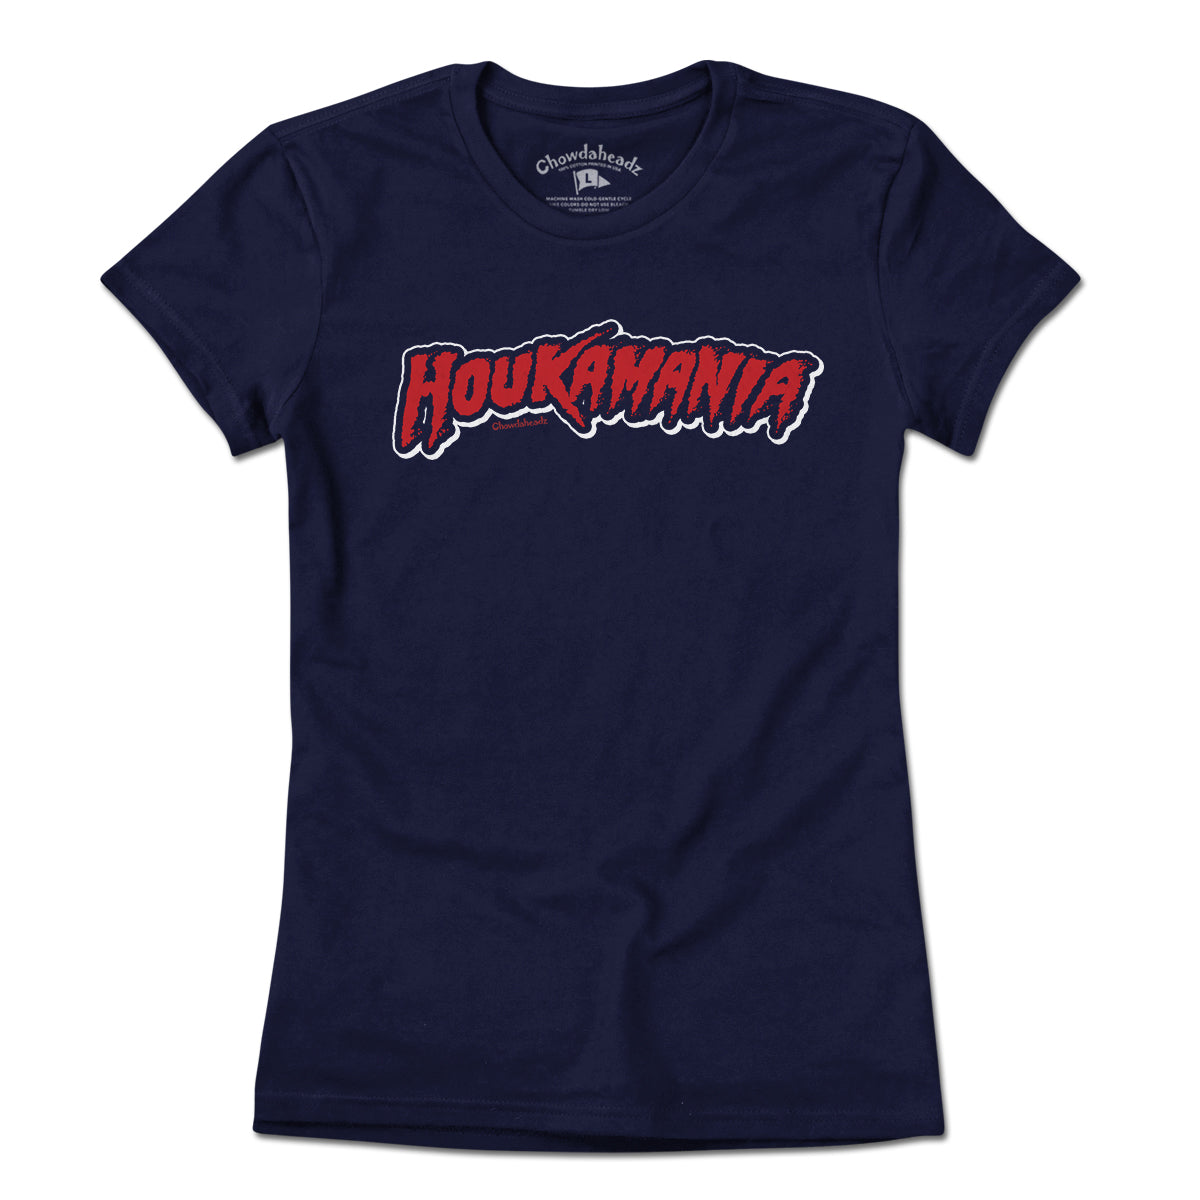 Houkamania Boston T-Shirt - Chowdaheadz